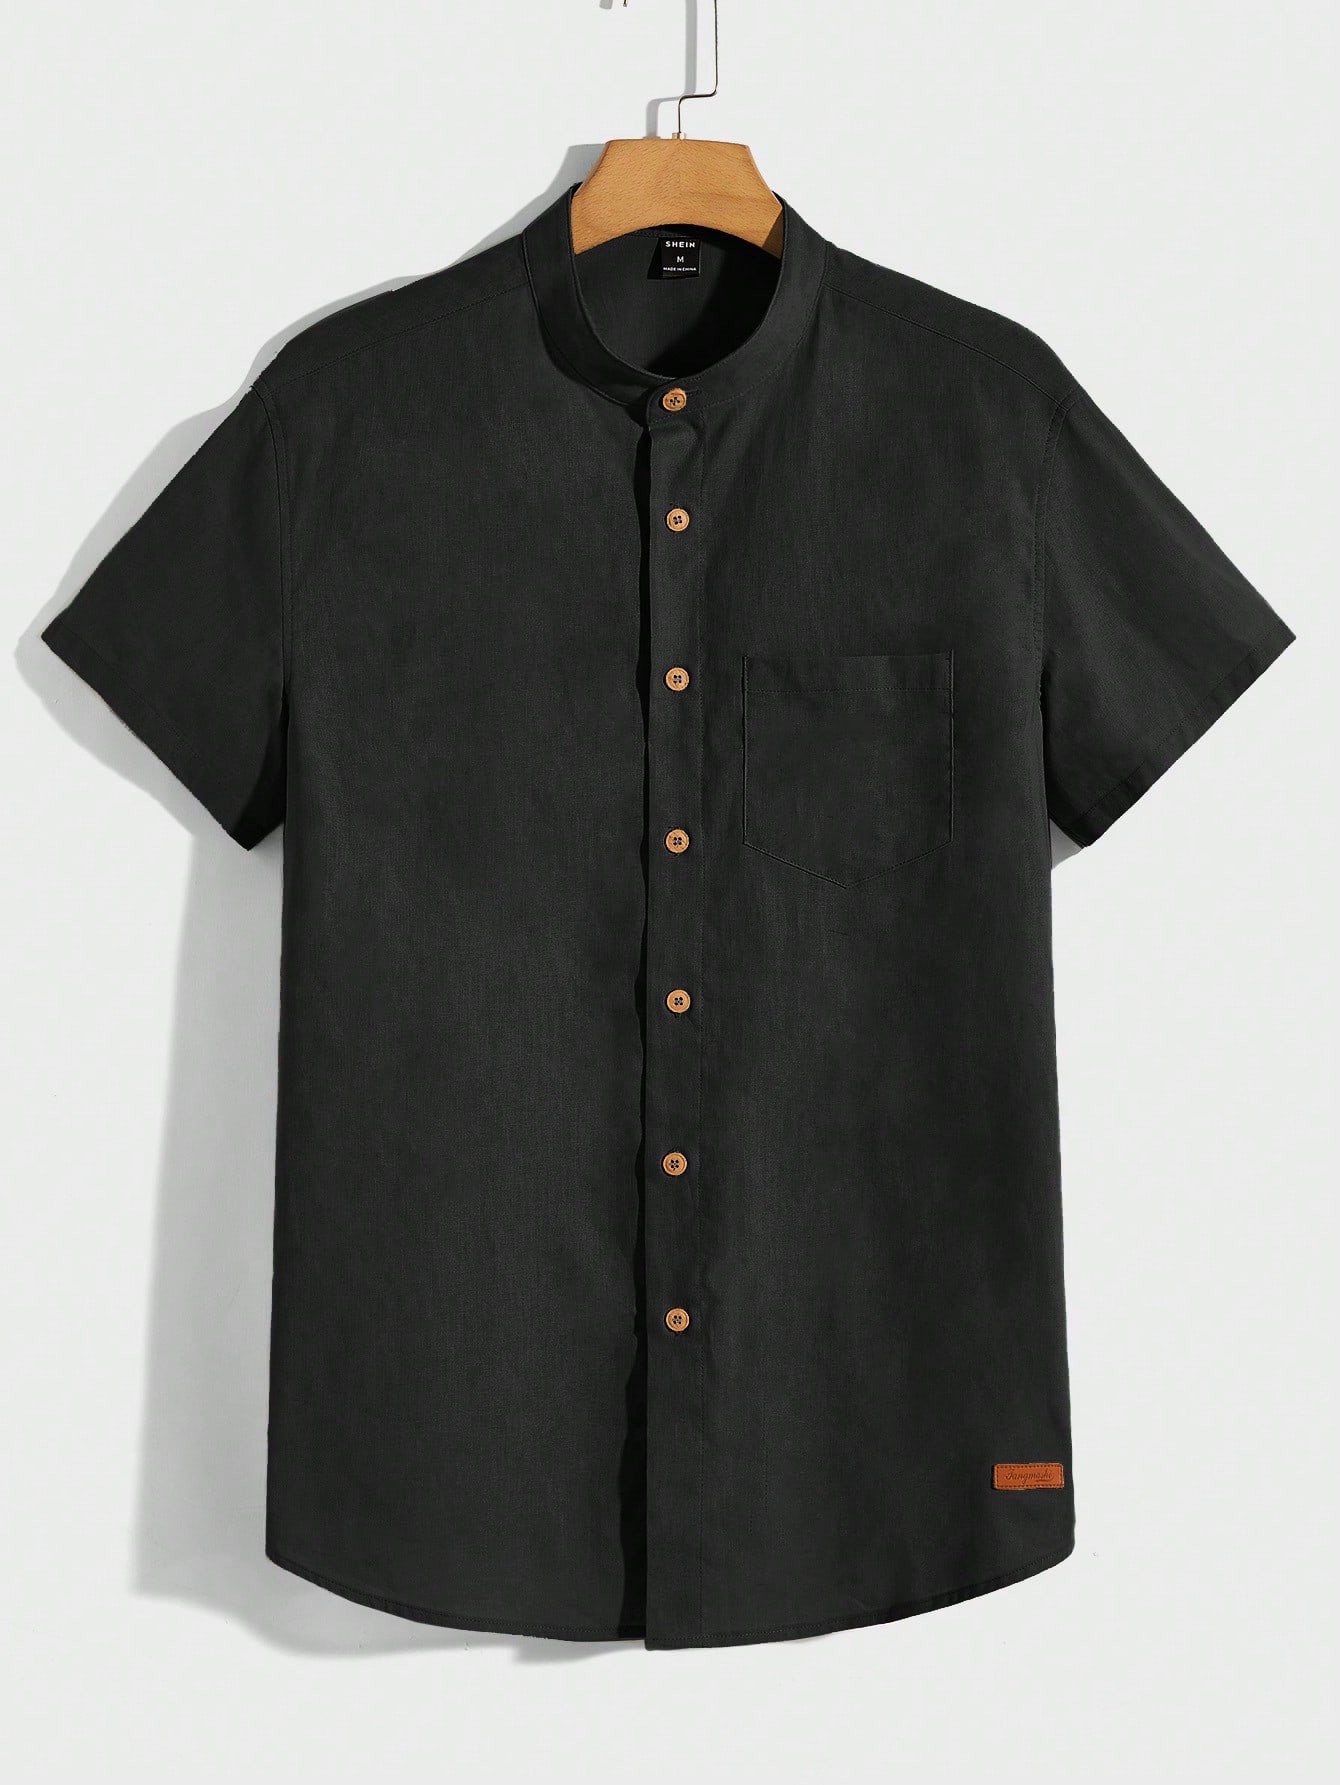 Мужская тканая рубашка Manfinity Homme с карманами, черный мужская летняя рубашка из хлопка и льна с коротким рукавом и воротником стойкой